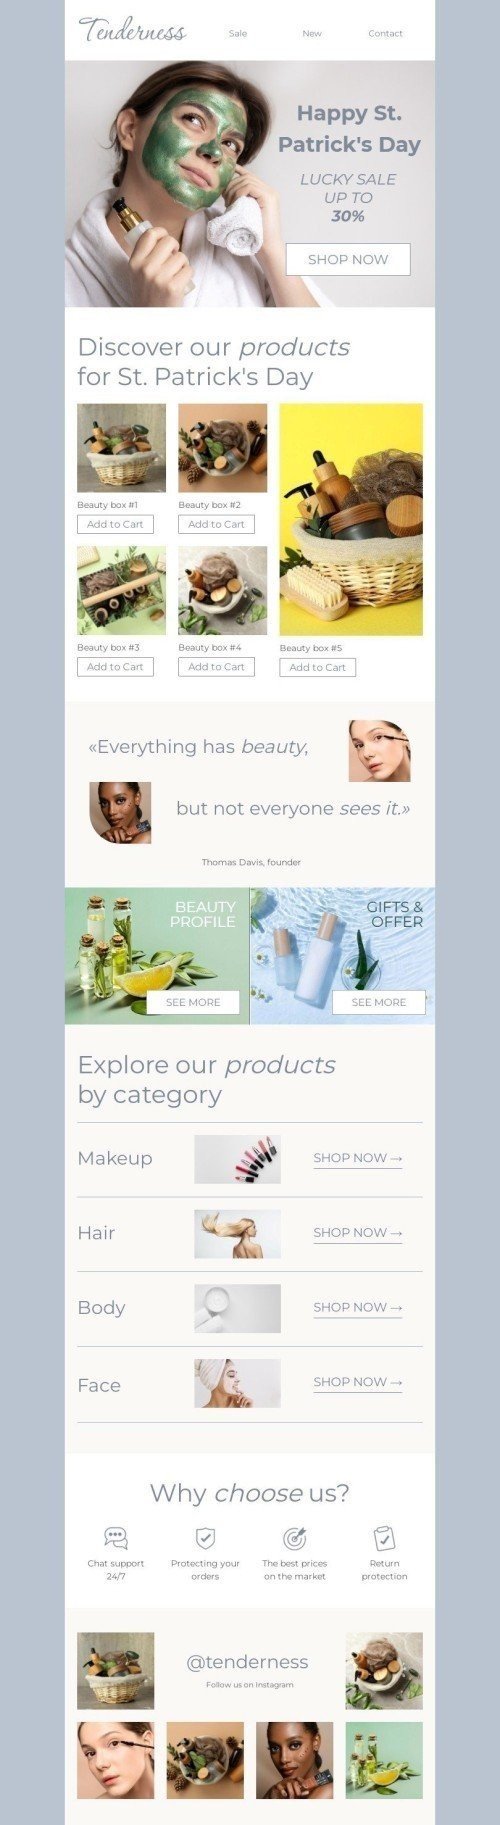 Modelo de E-mail de «Tudo tem beleza» de Dia de São Patrício para a indústria de Beleza e Cuidados Pessoais mobile view